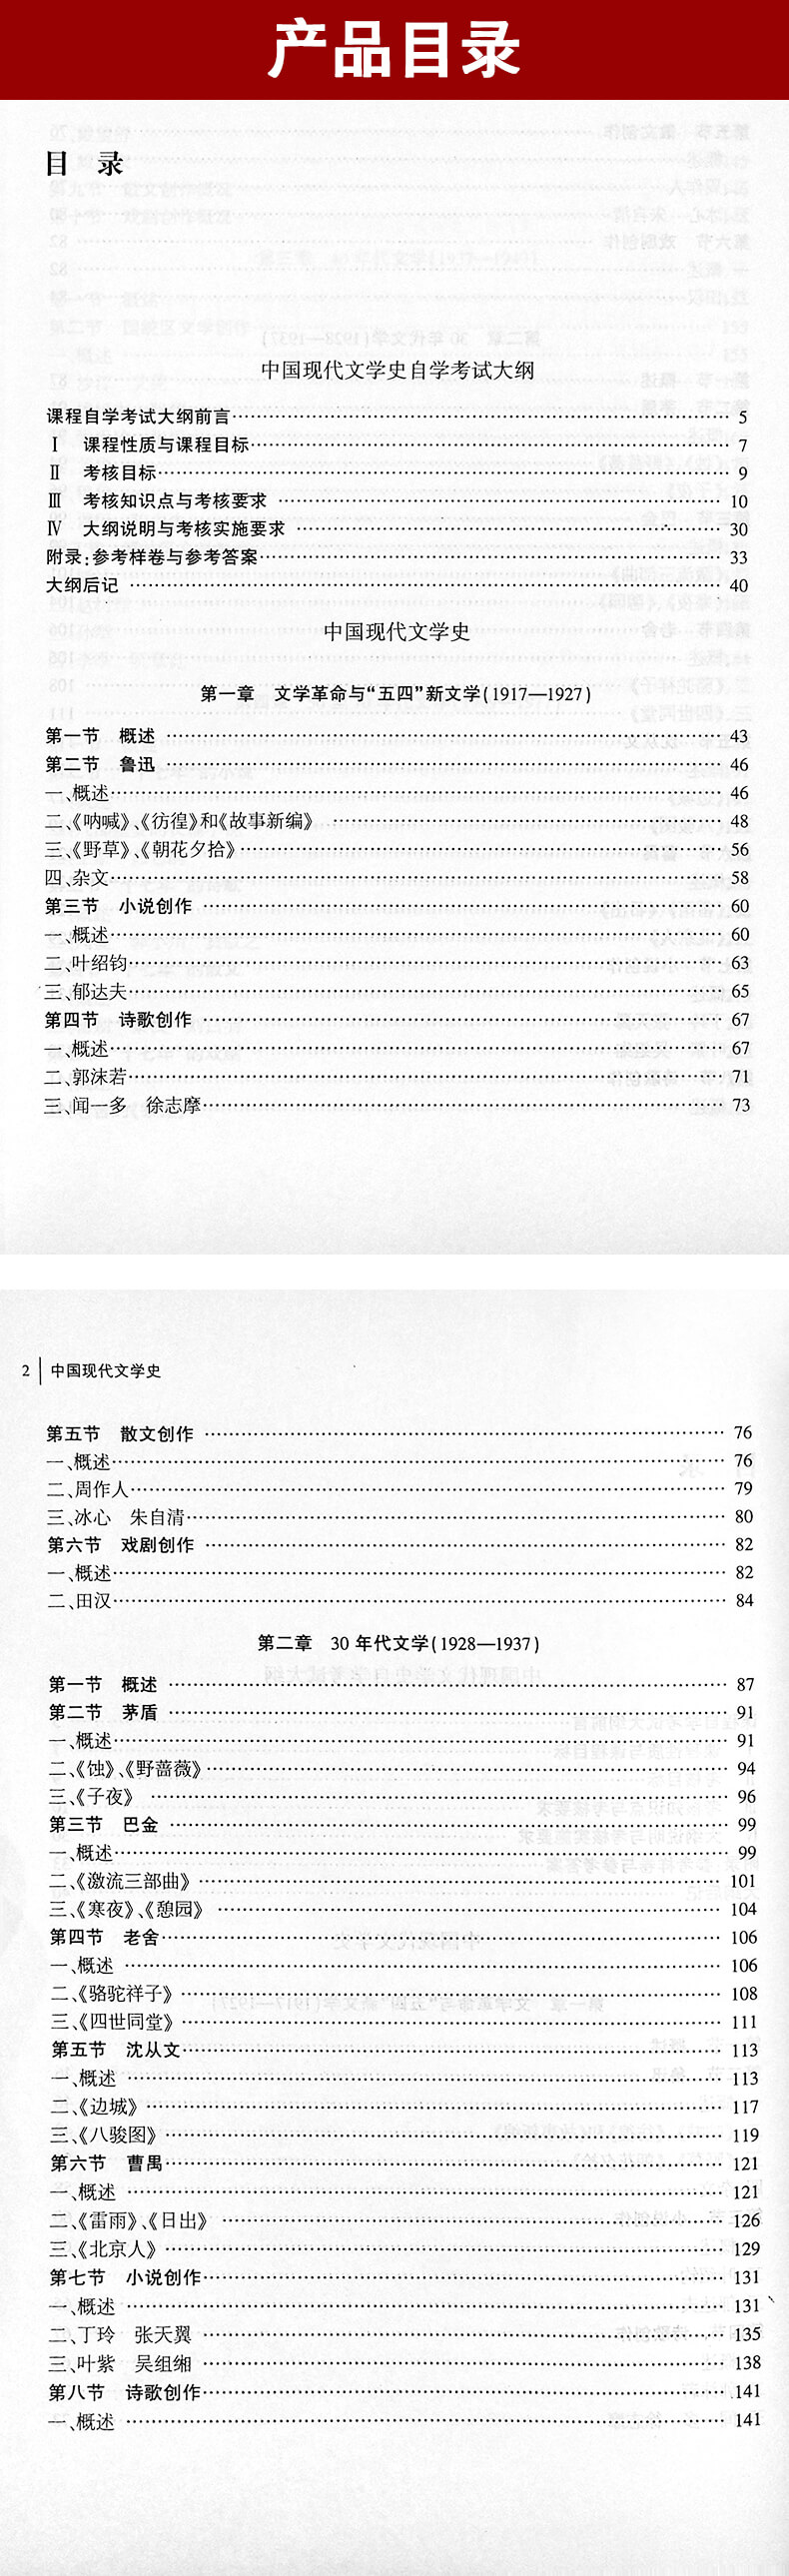 中国现代文学史00537教材目录